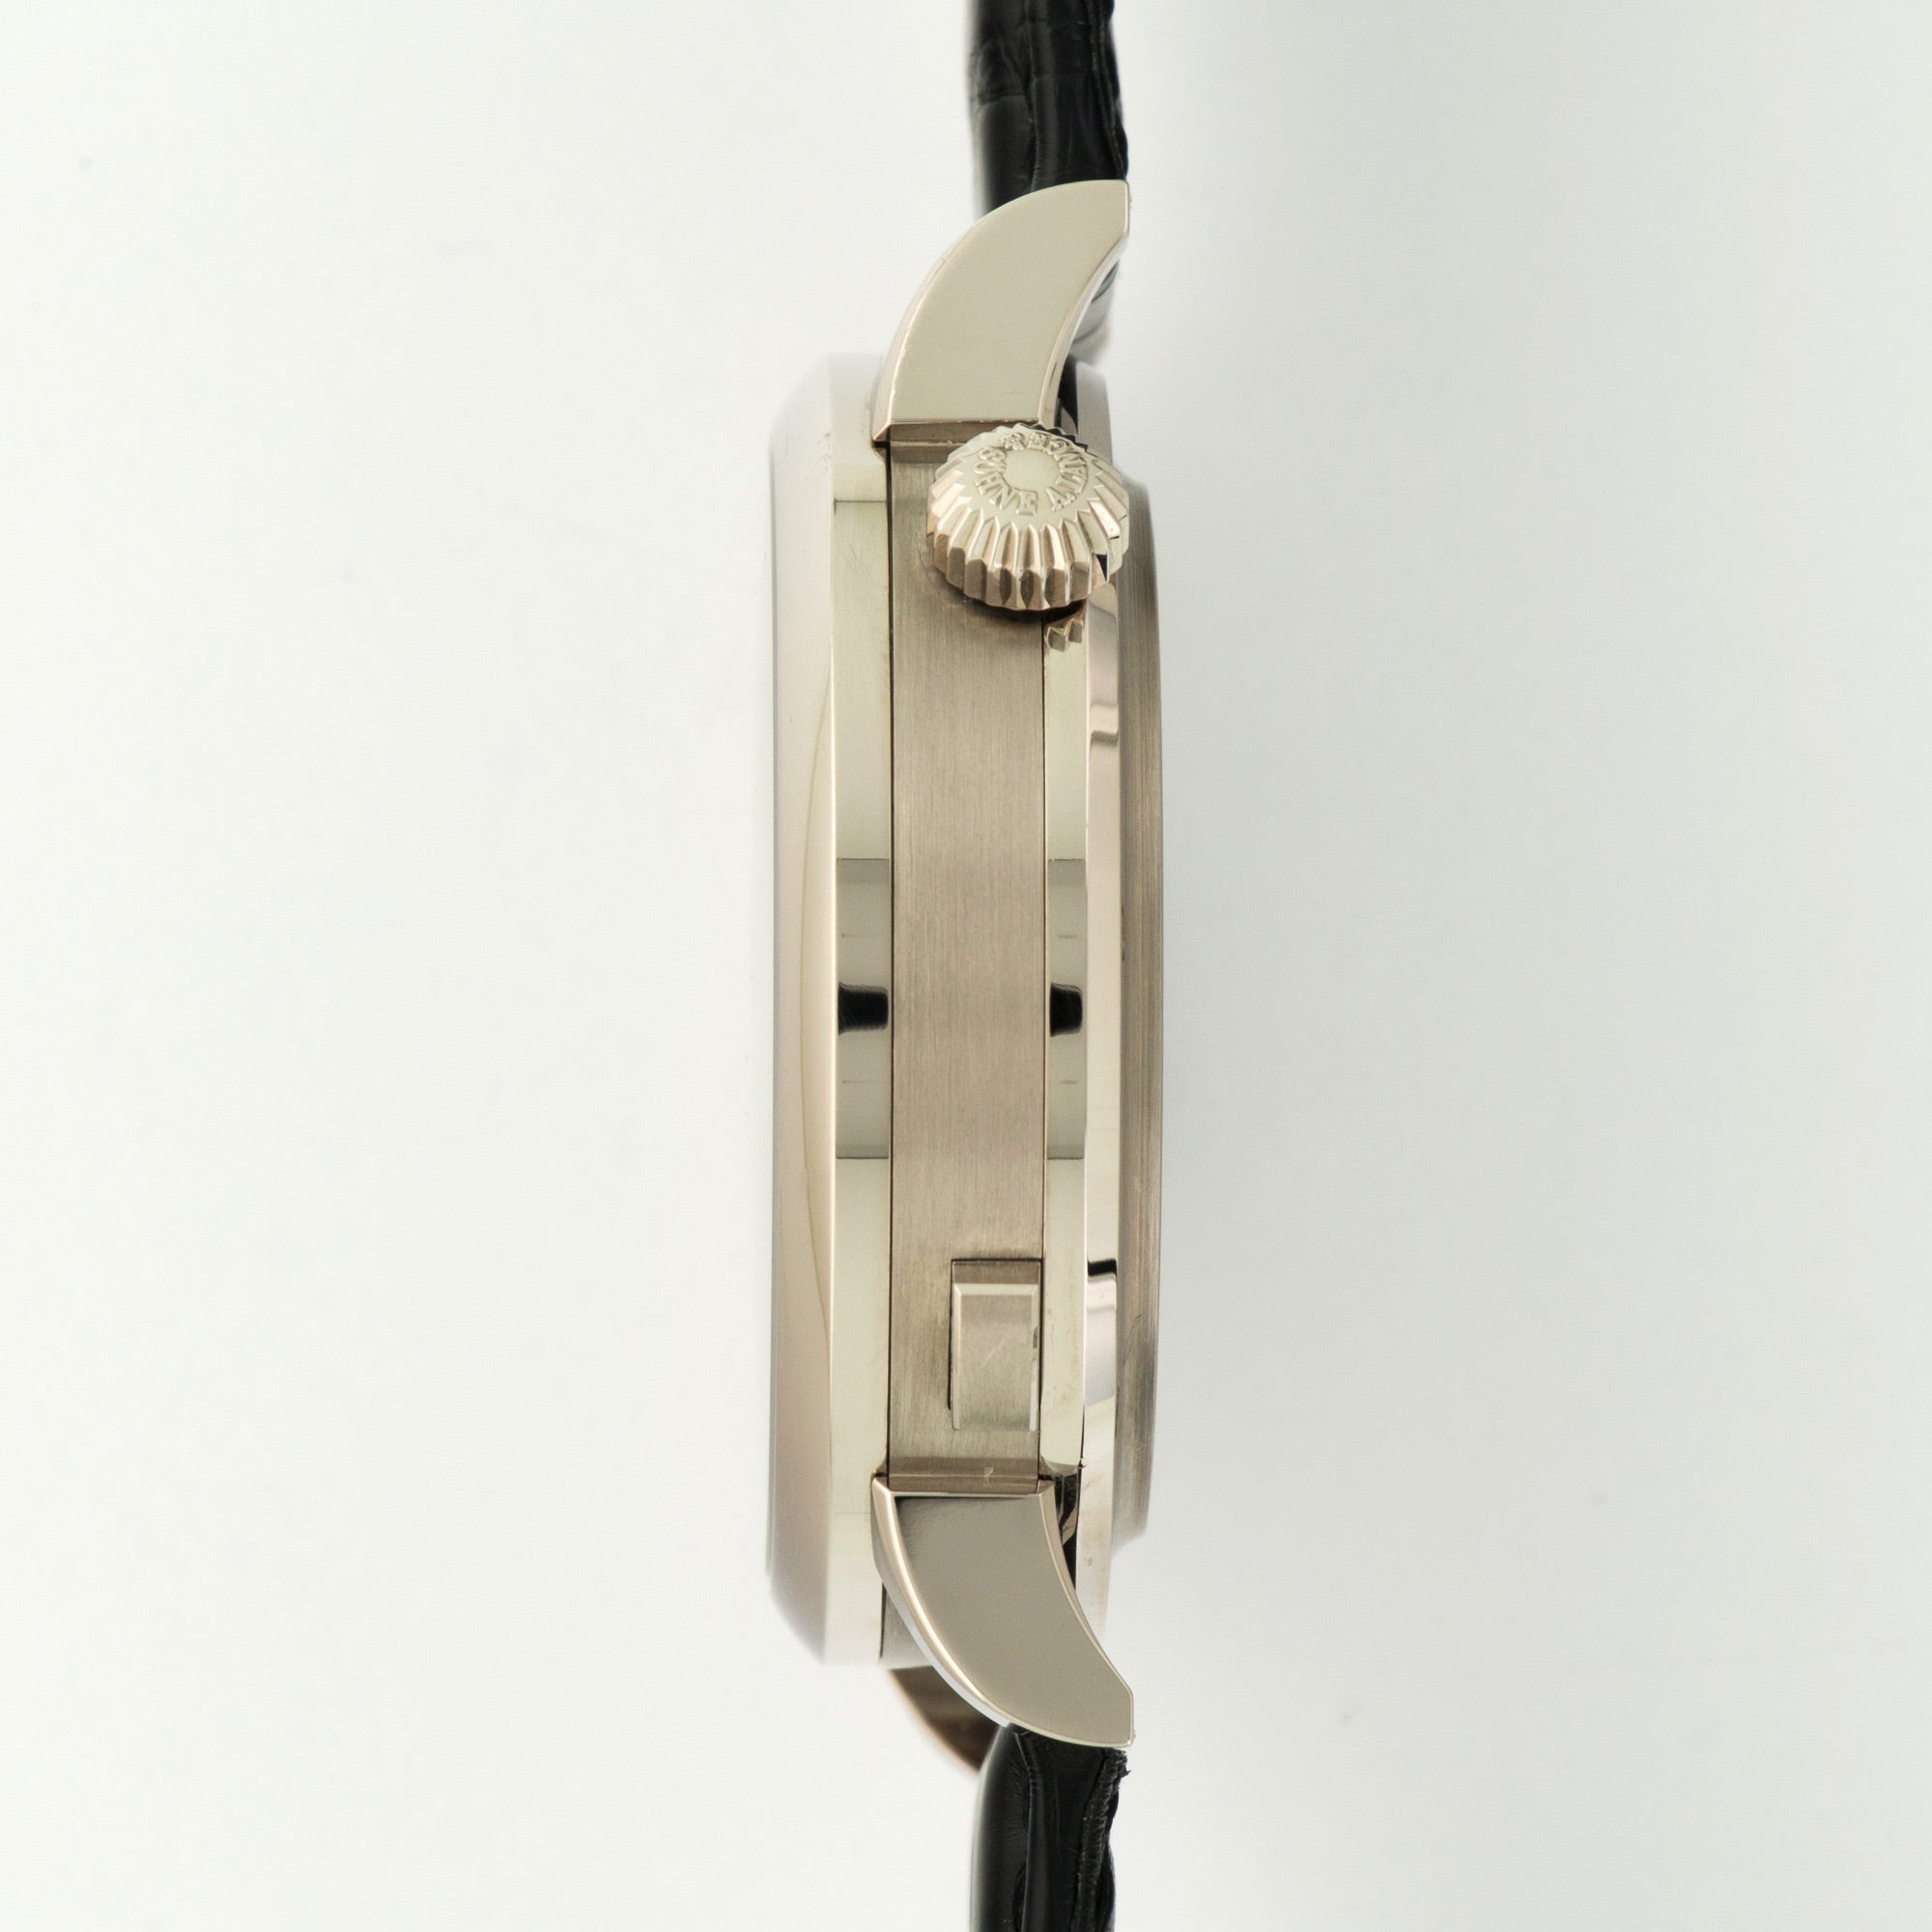 A. Lange & Sohne - A. Lange & Sohne White Gold Zeitwerk Striking Time Watch Ref. 145.029 - The Keystone Watches